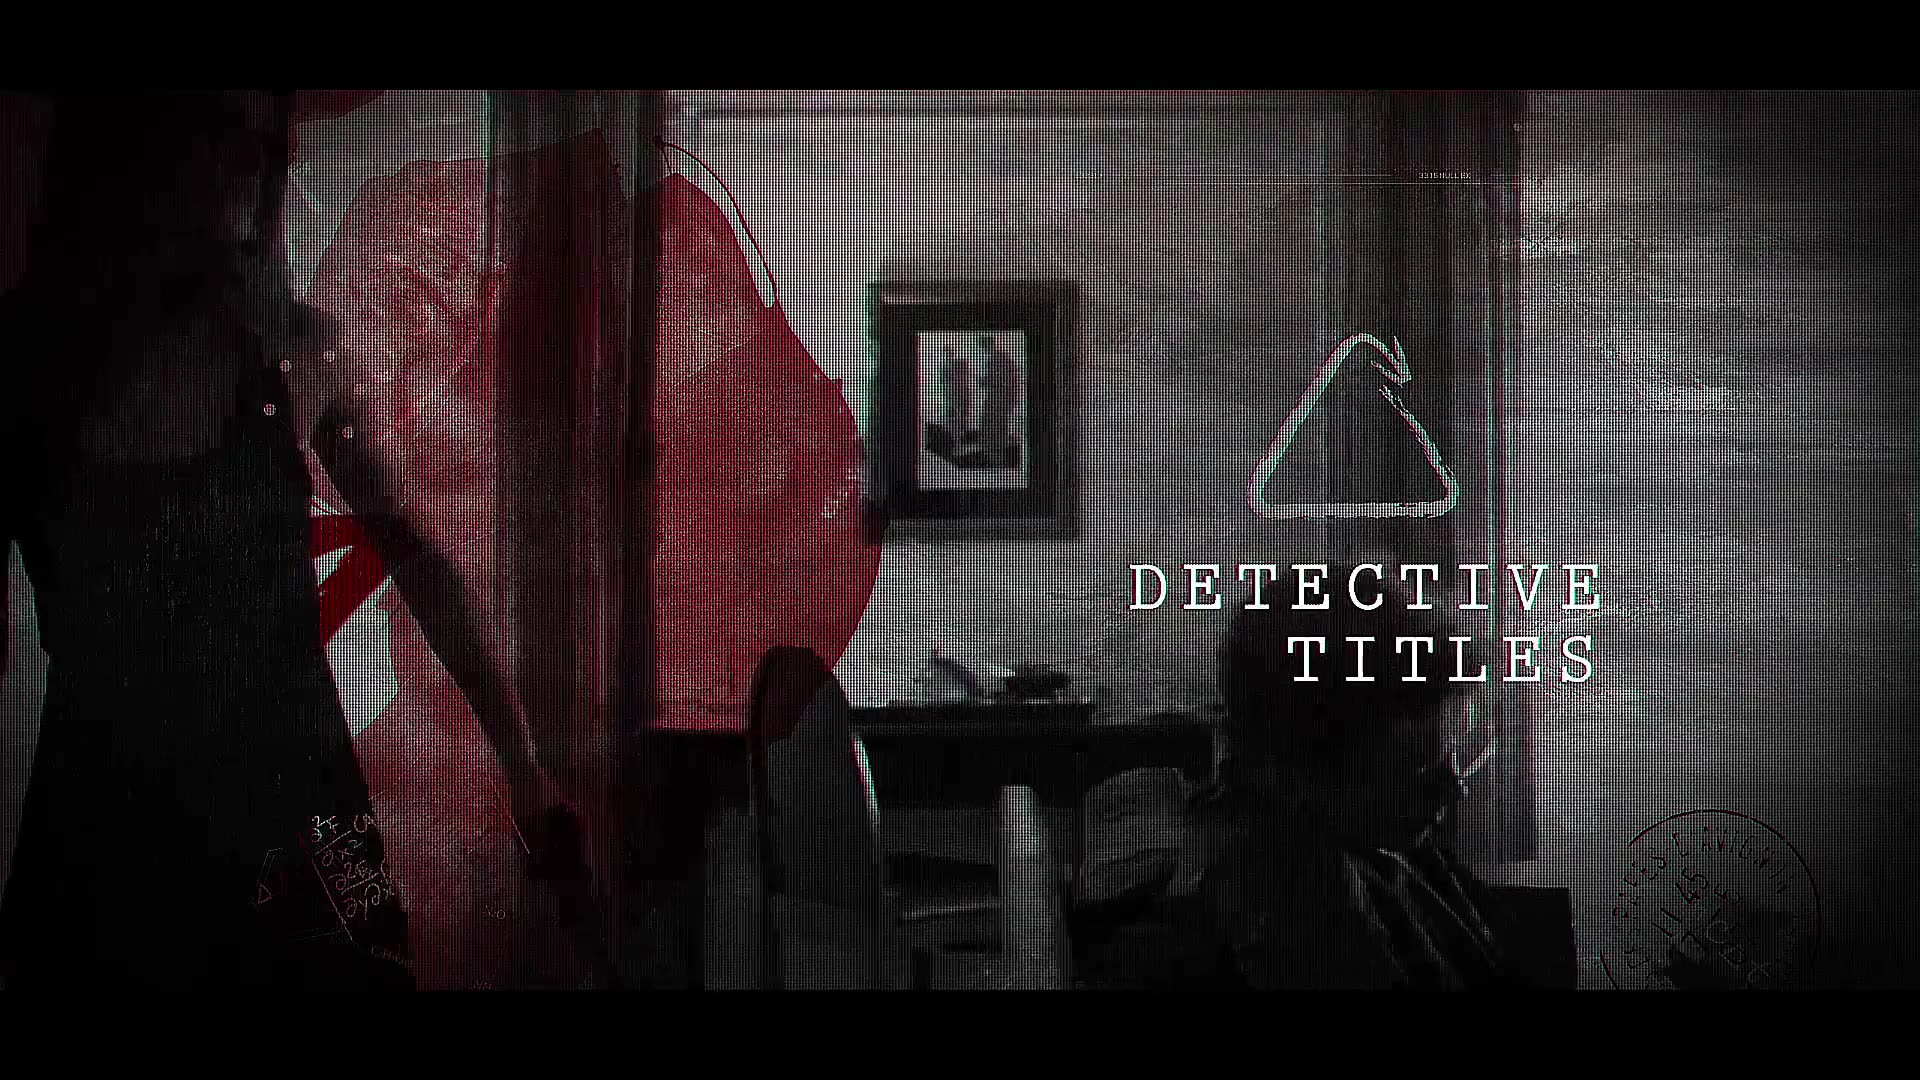 Detective Trailer Videohive 22228484 Premiere Pro Image 5